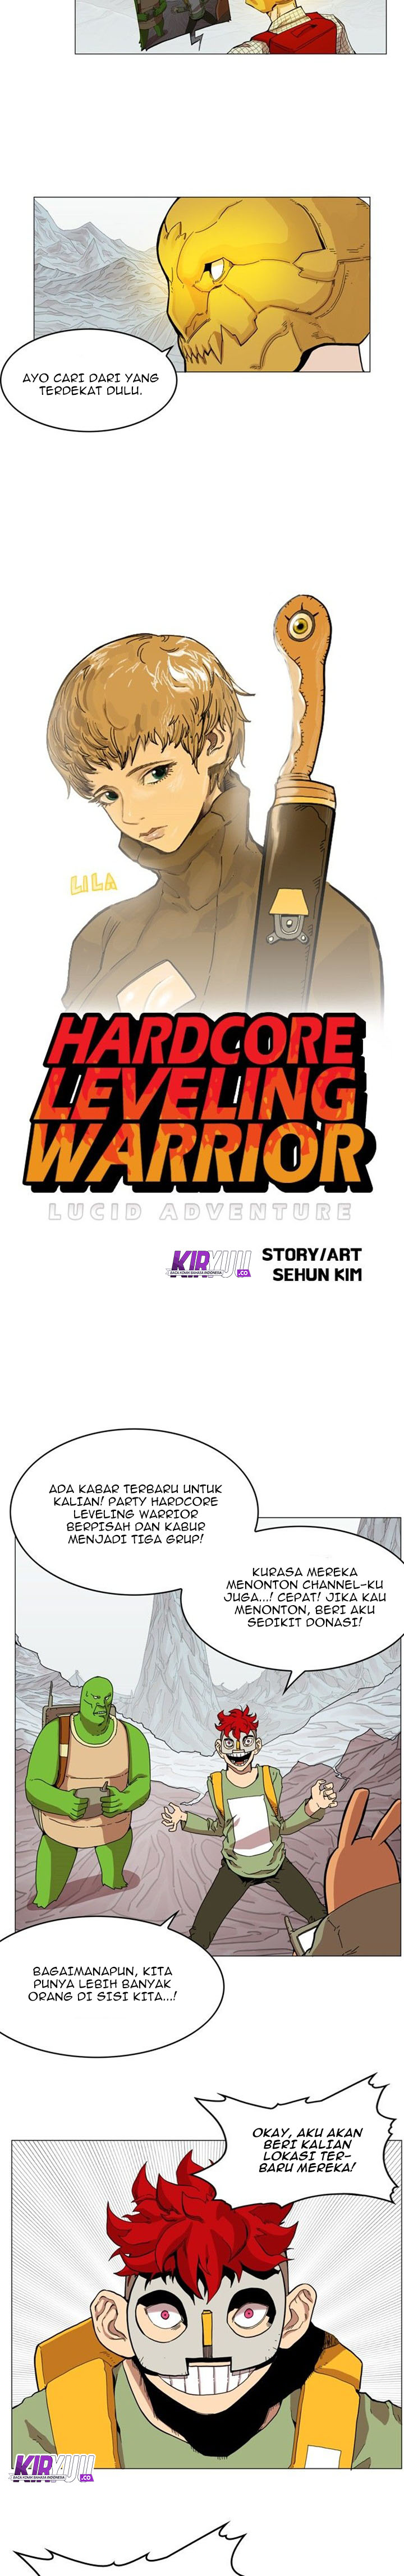 Hardcore Leveling Warrior Chapter 45